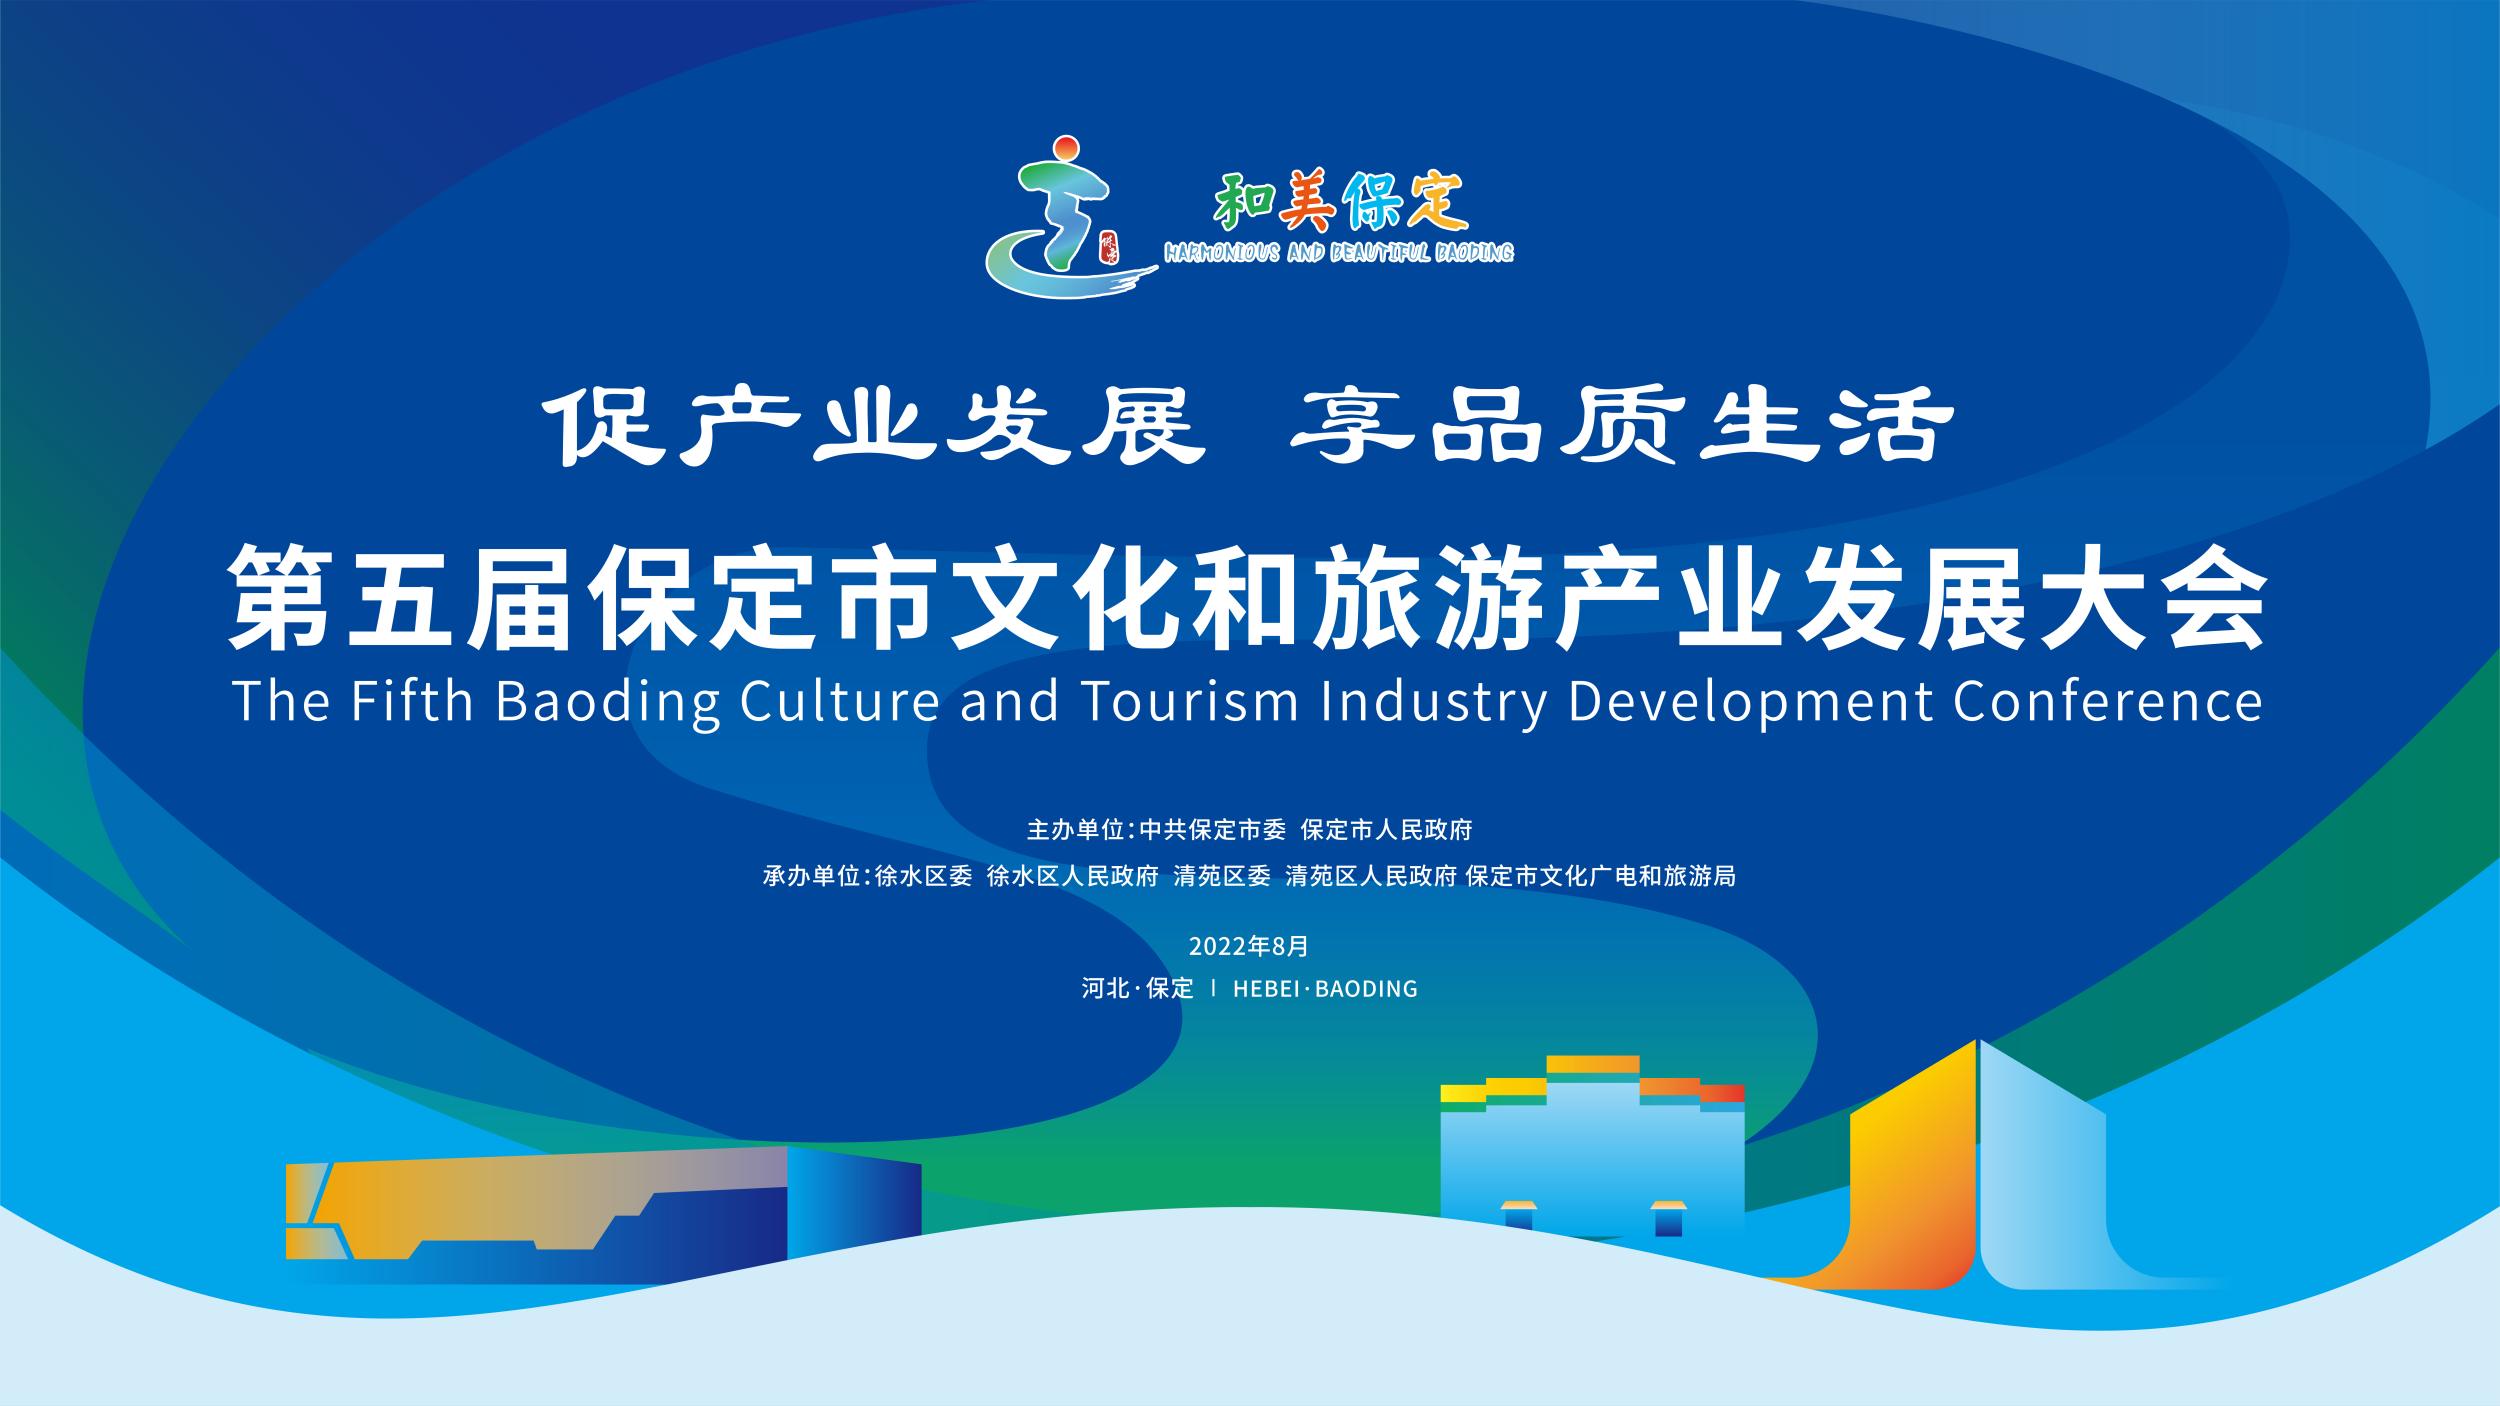 长城直播 | 第五届保定市文化和旅游产业发展大会 